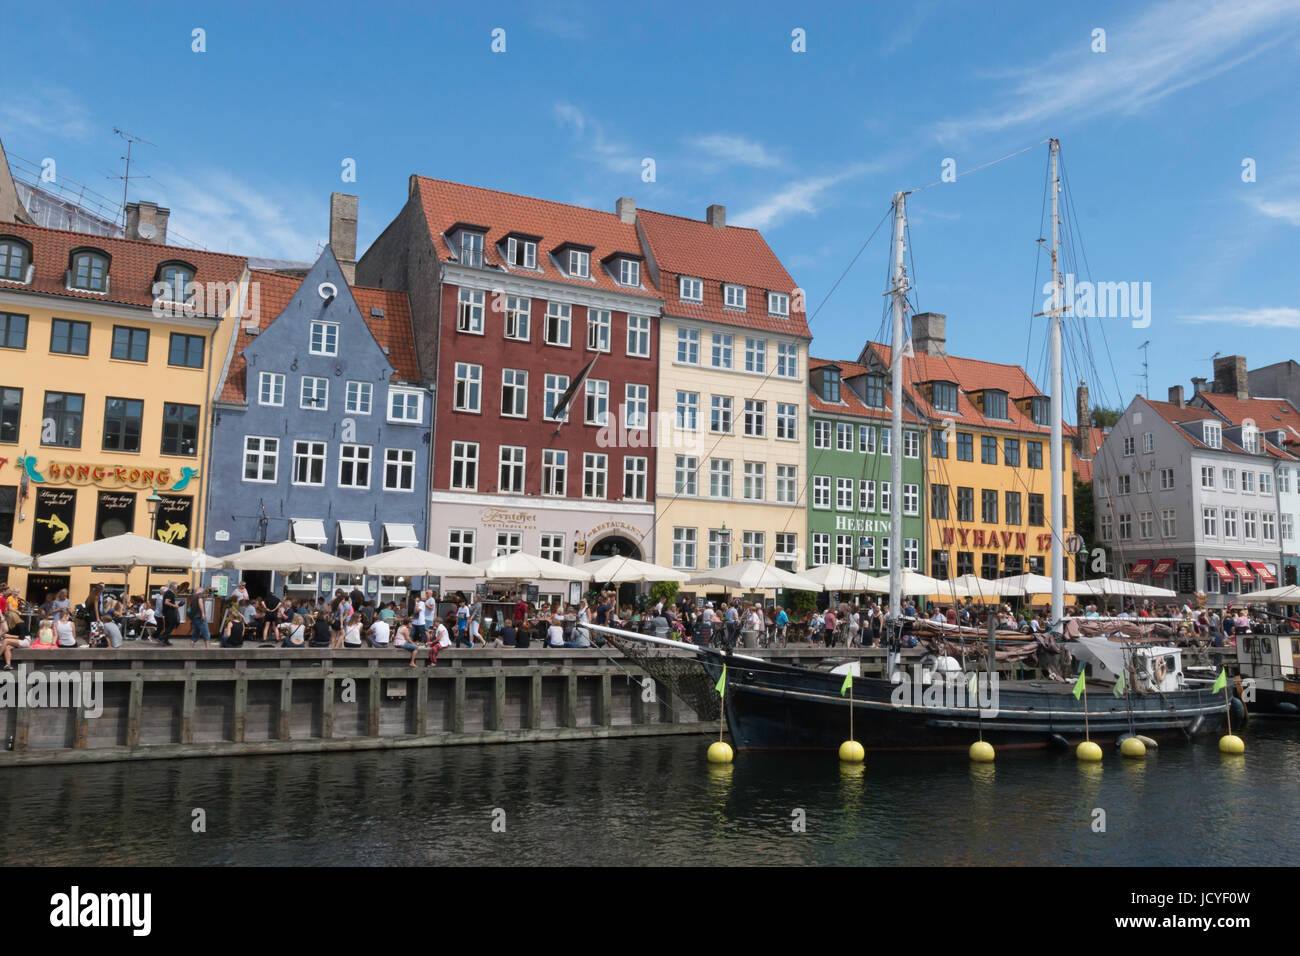 La folla folla sul lungomare a Nyhavn, Copenhagen su un luminoso giorno d'estate. una barca è ormeggiata sul canale. Foto Stock